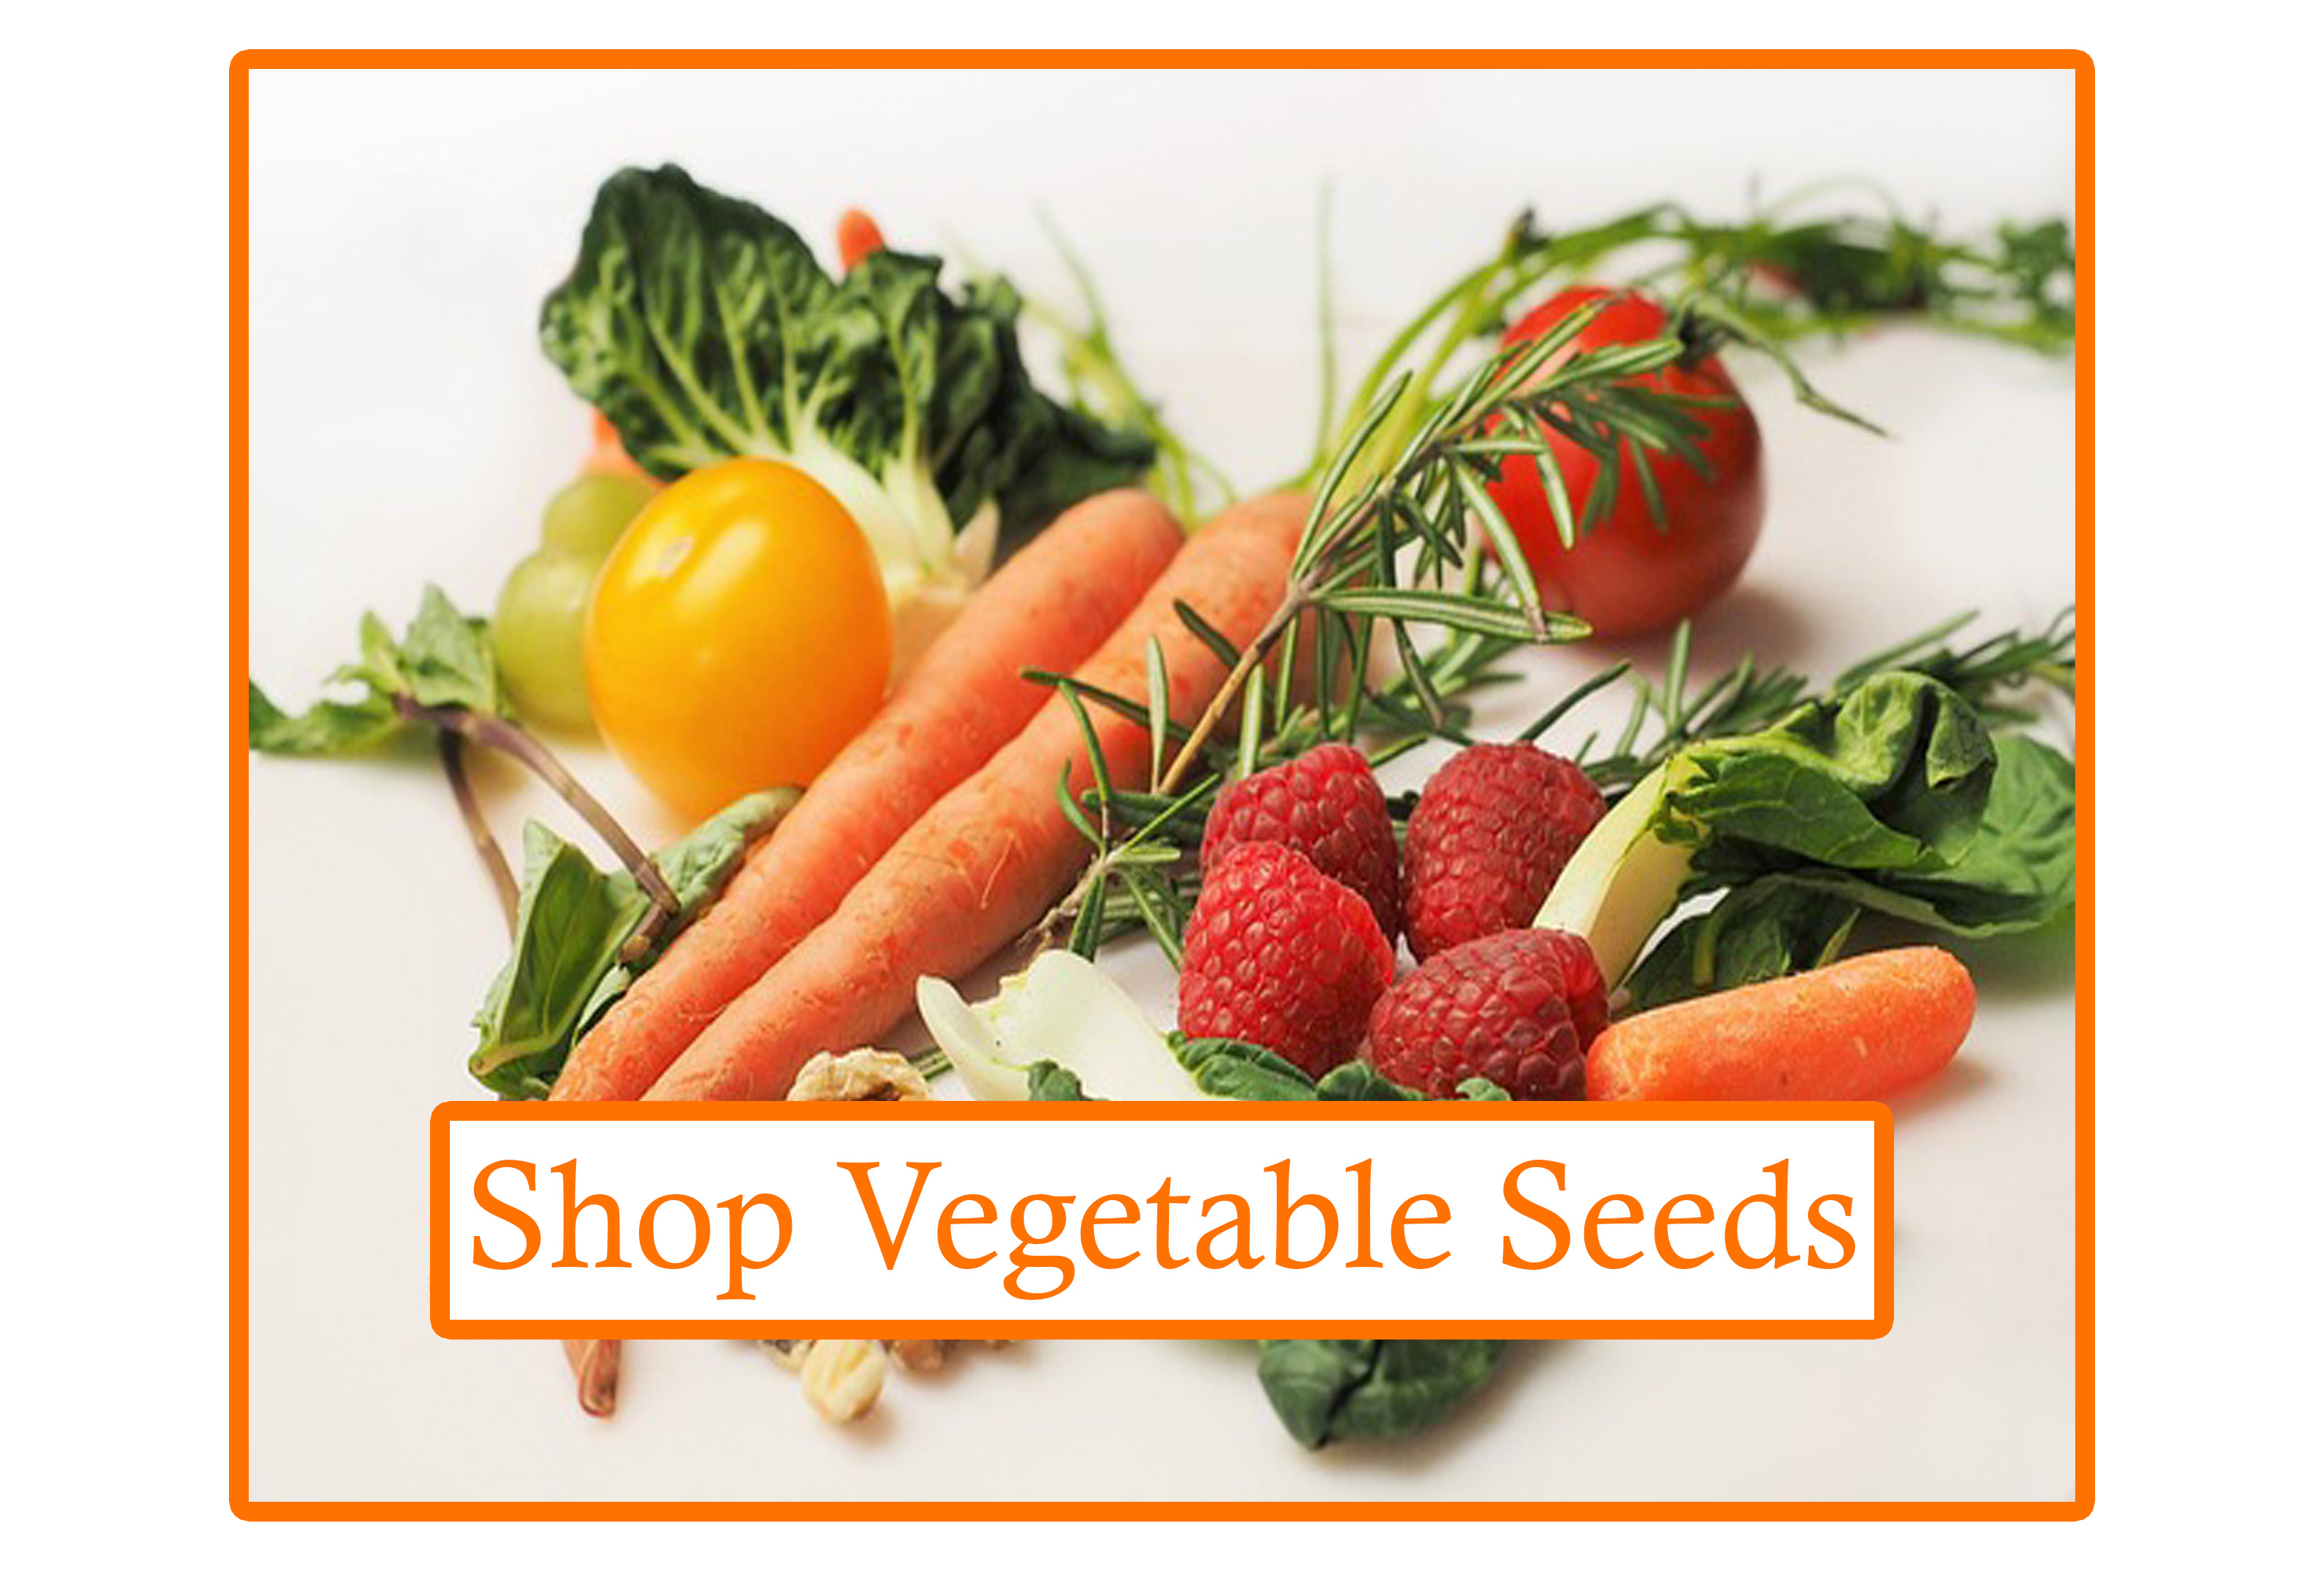 "shop vegetable seeds" Alt image of vegetables